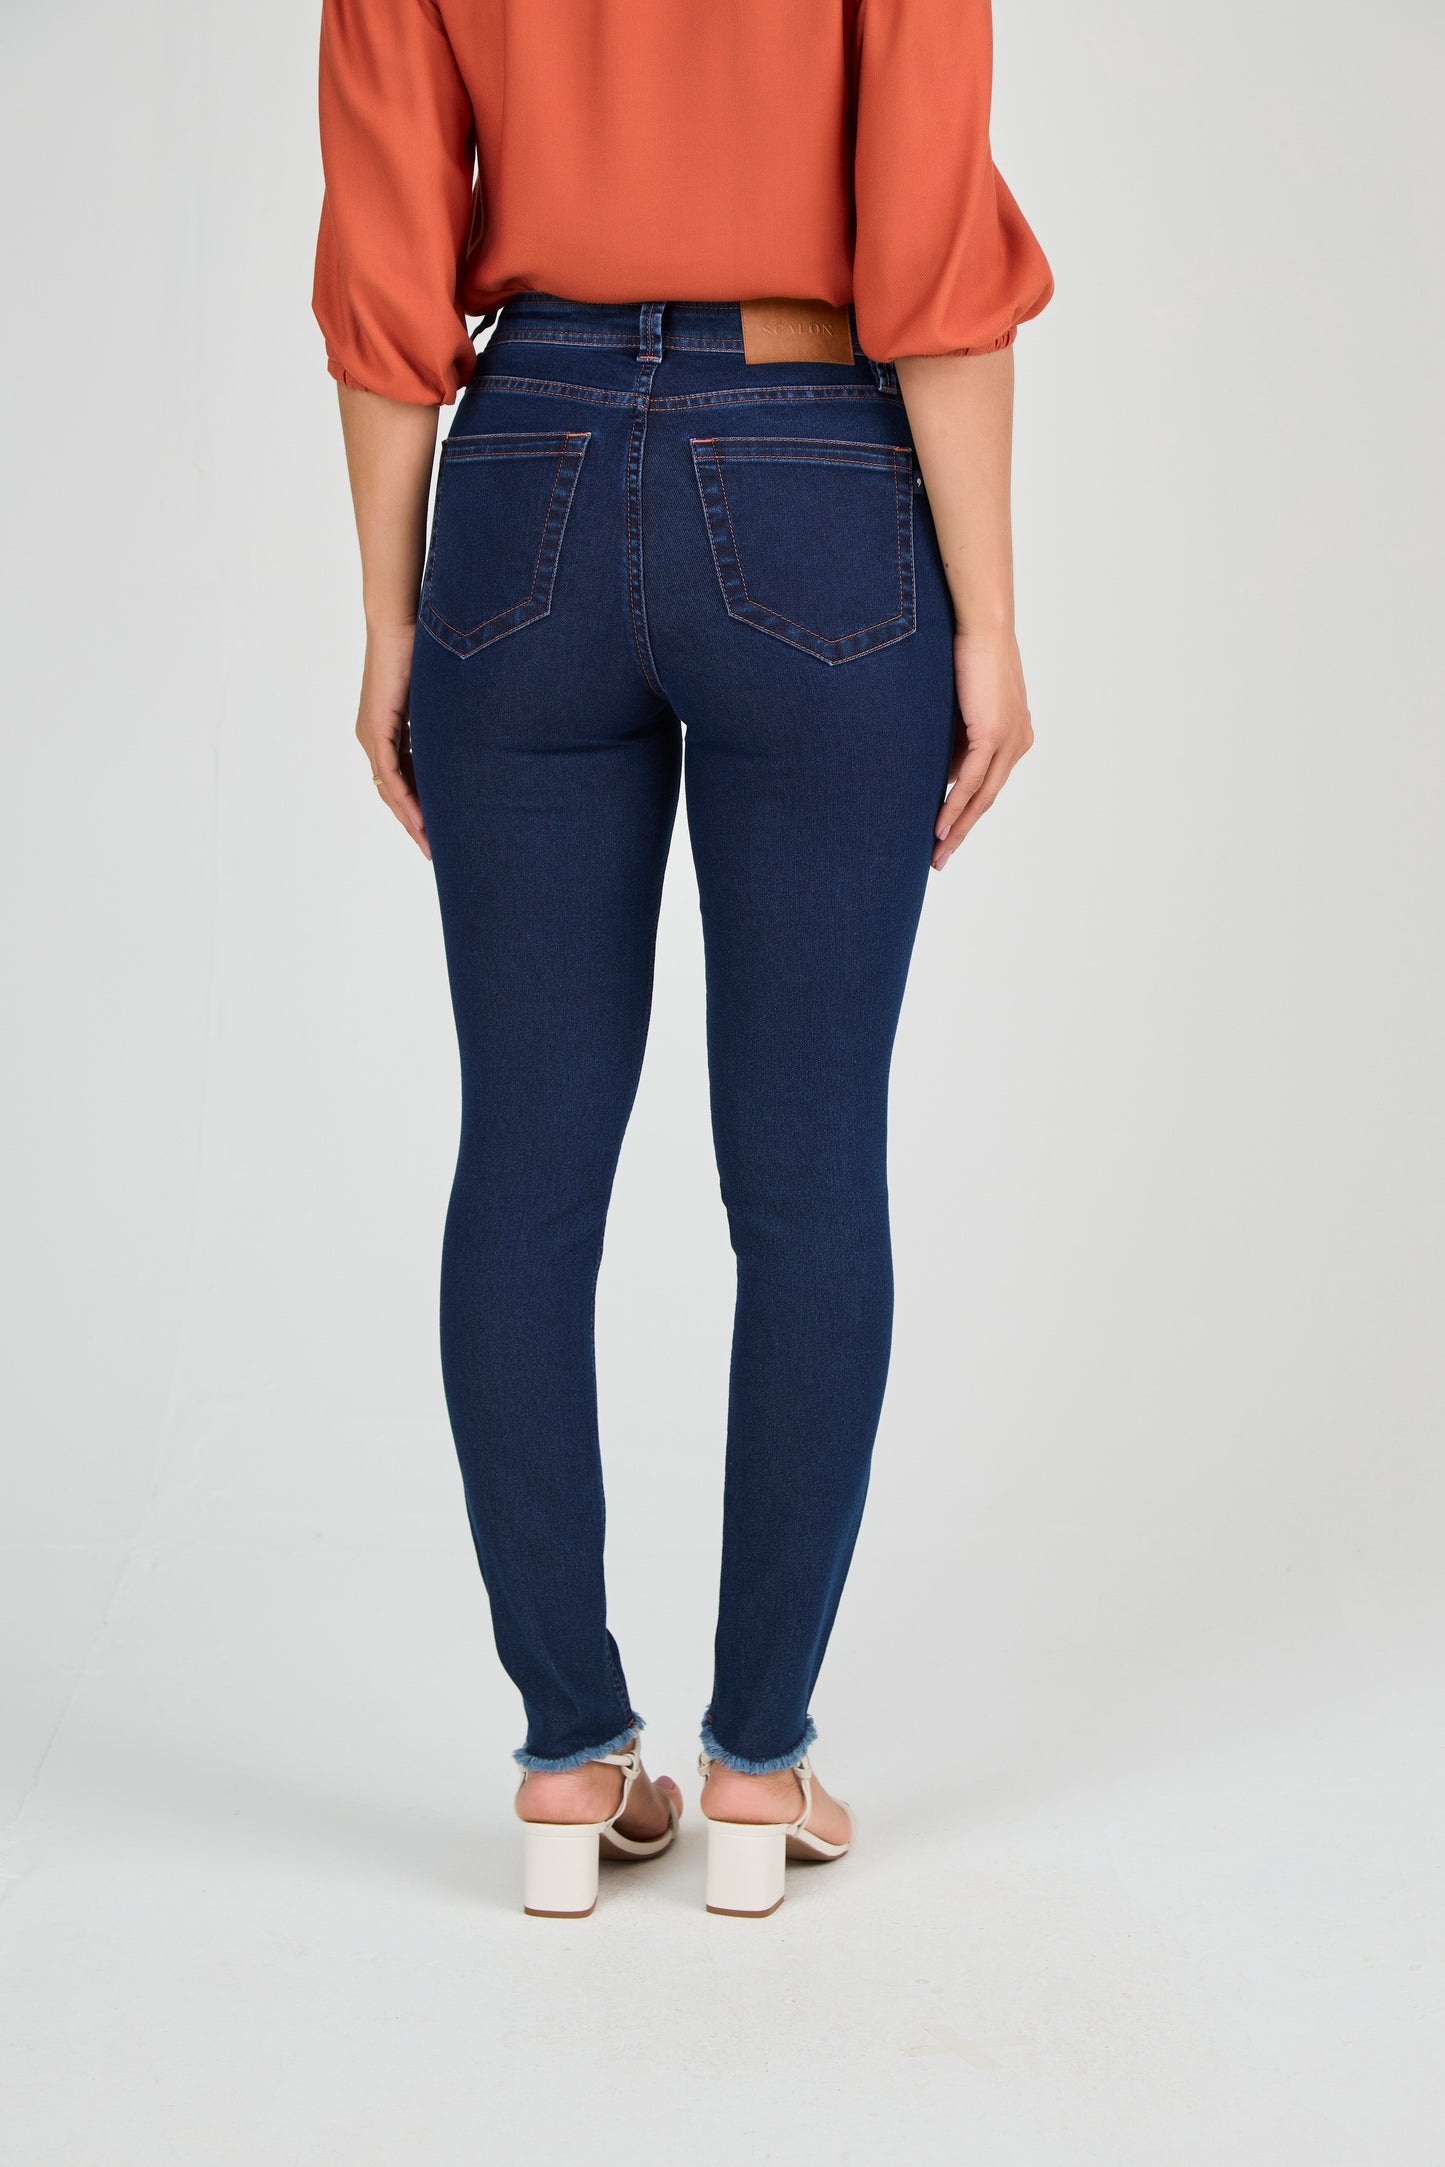 calça jeans skinny cintura intermediária detalhes pesponto